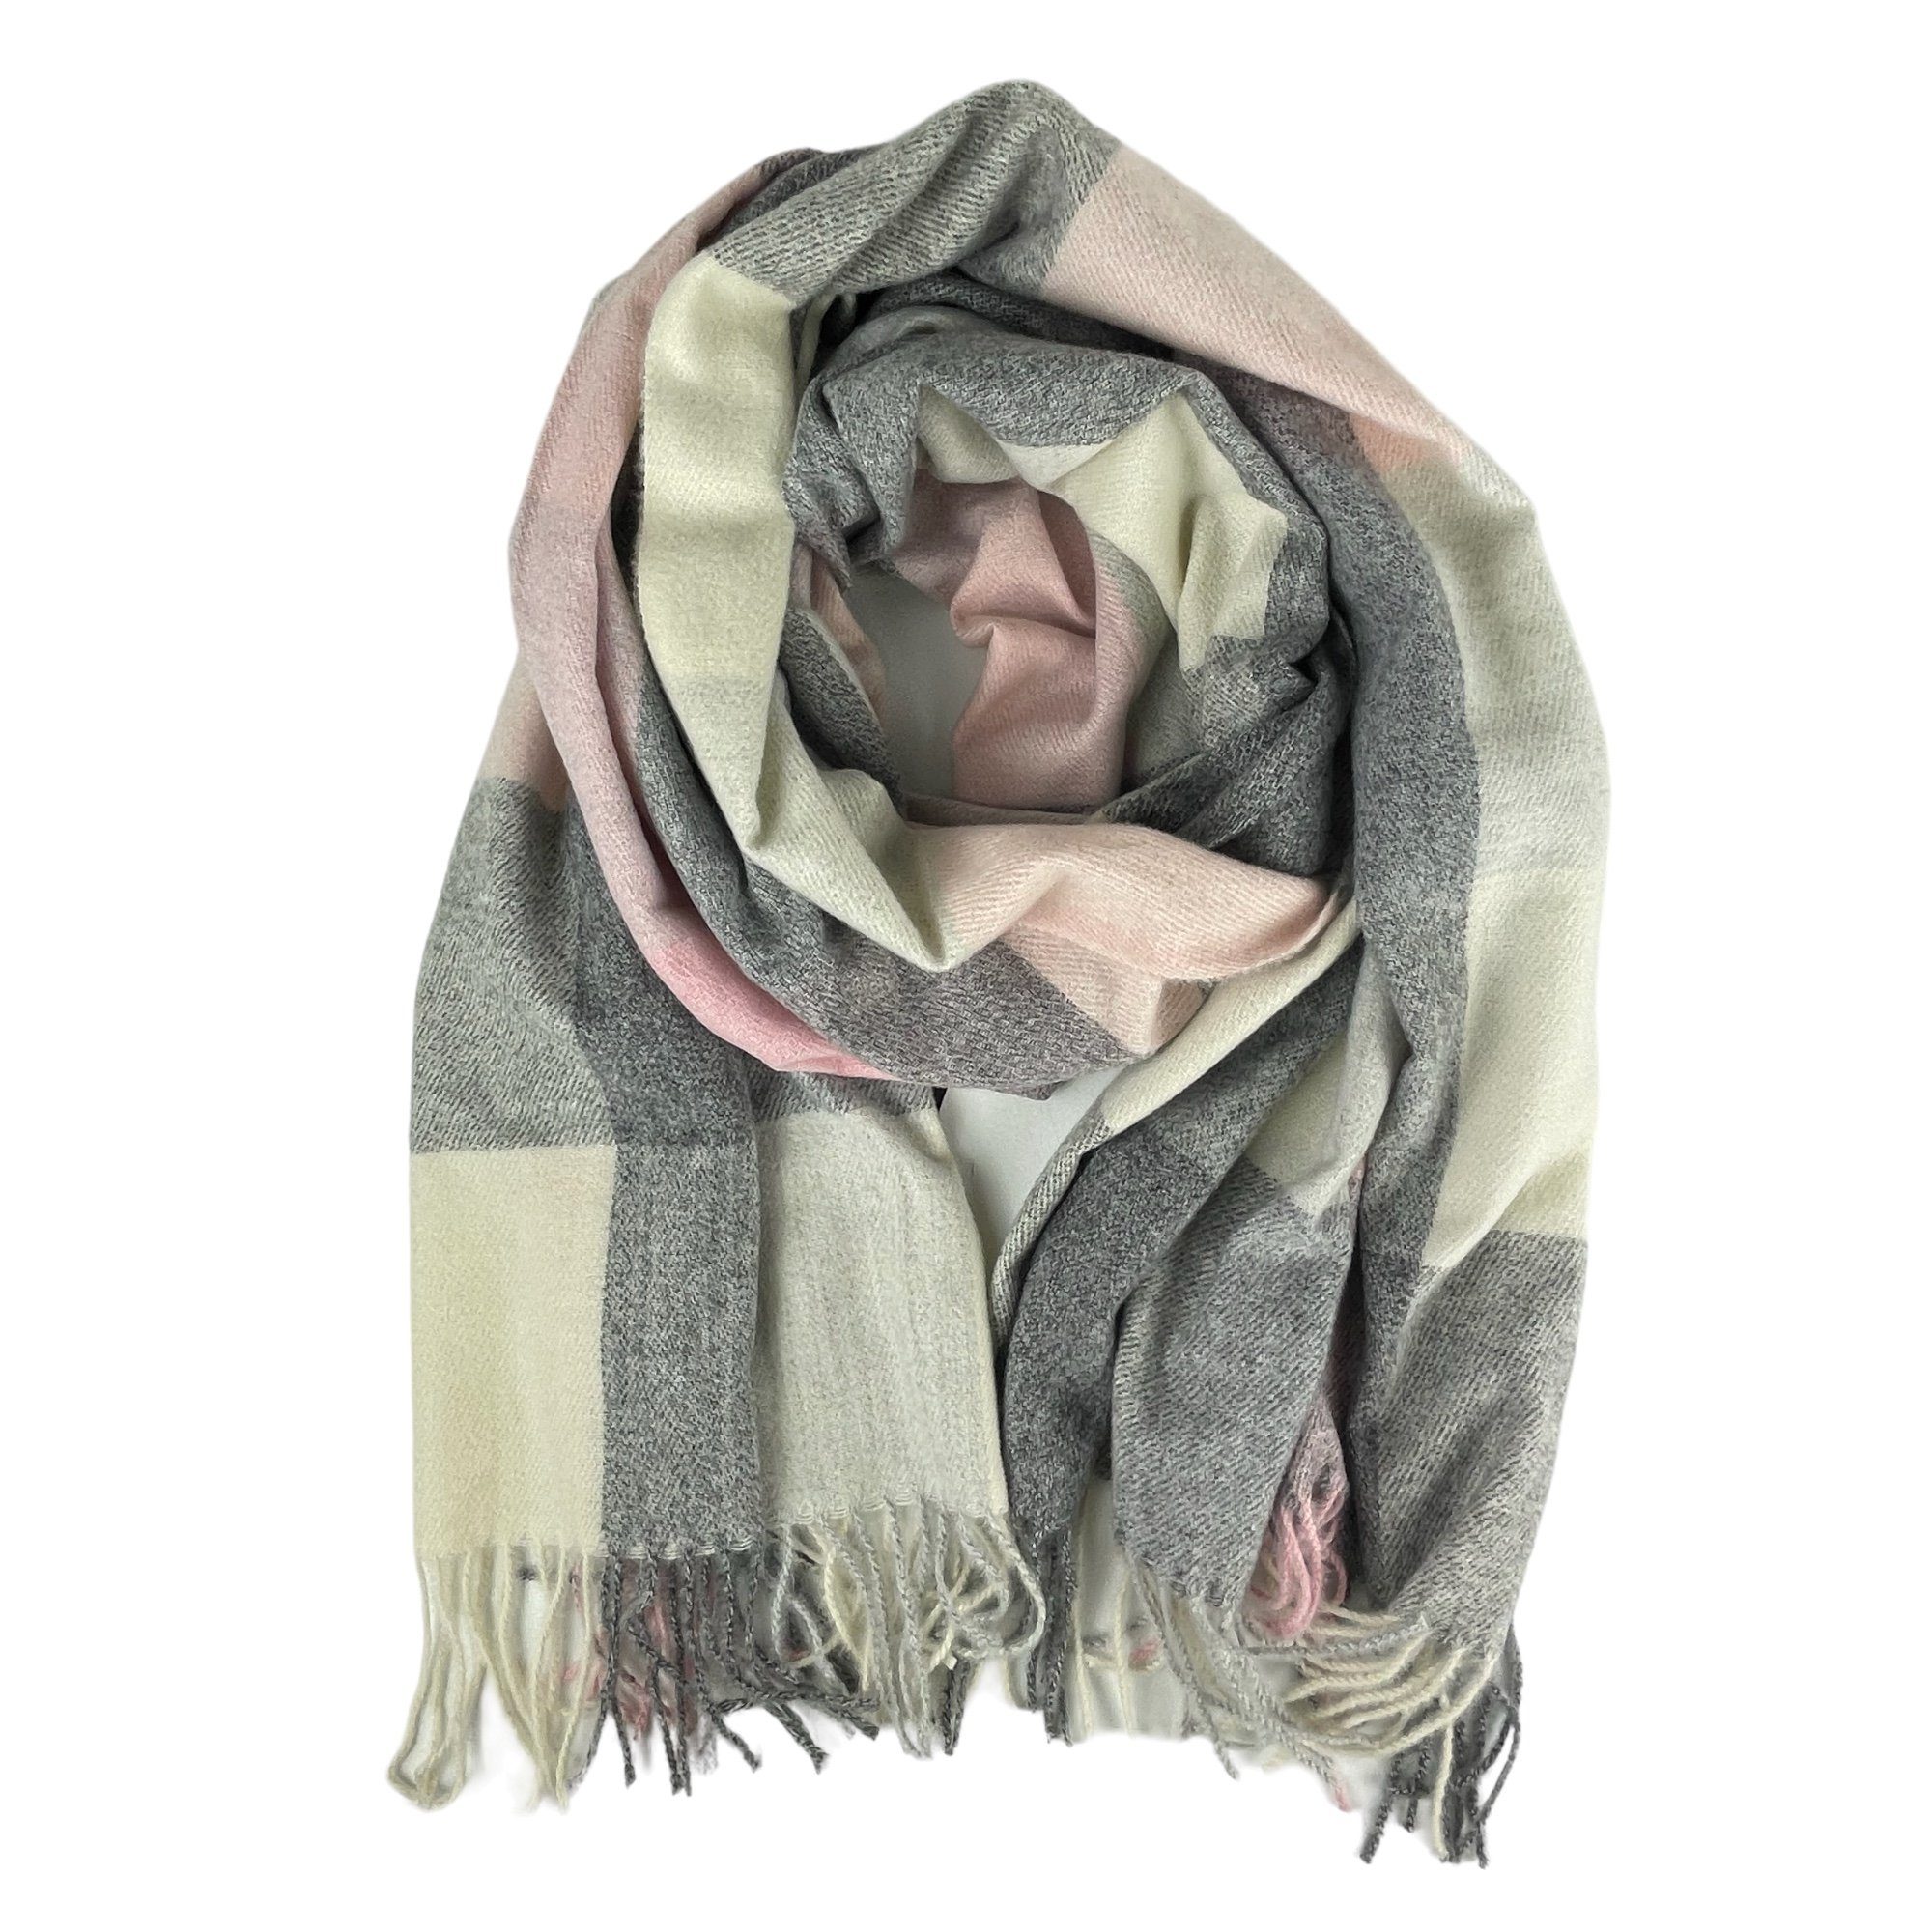 Fransen, Taschen4life rosa großer tolle Accessoires Karomuster, Damen Schal Herbst/Winter mit Schal modernes Farbkombination, grau